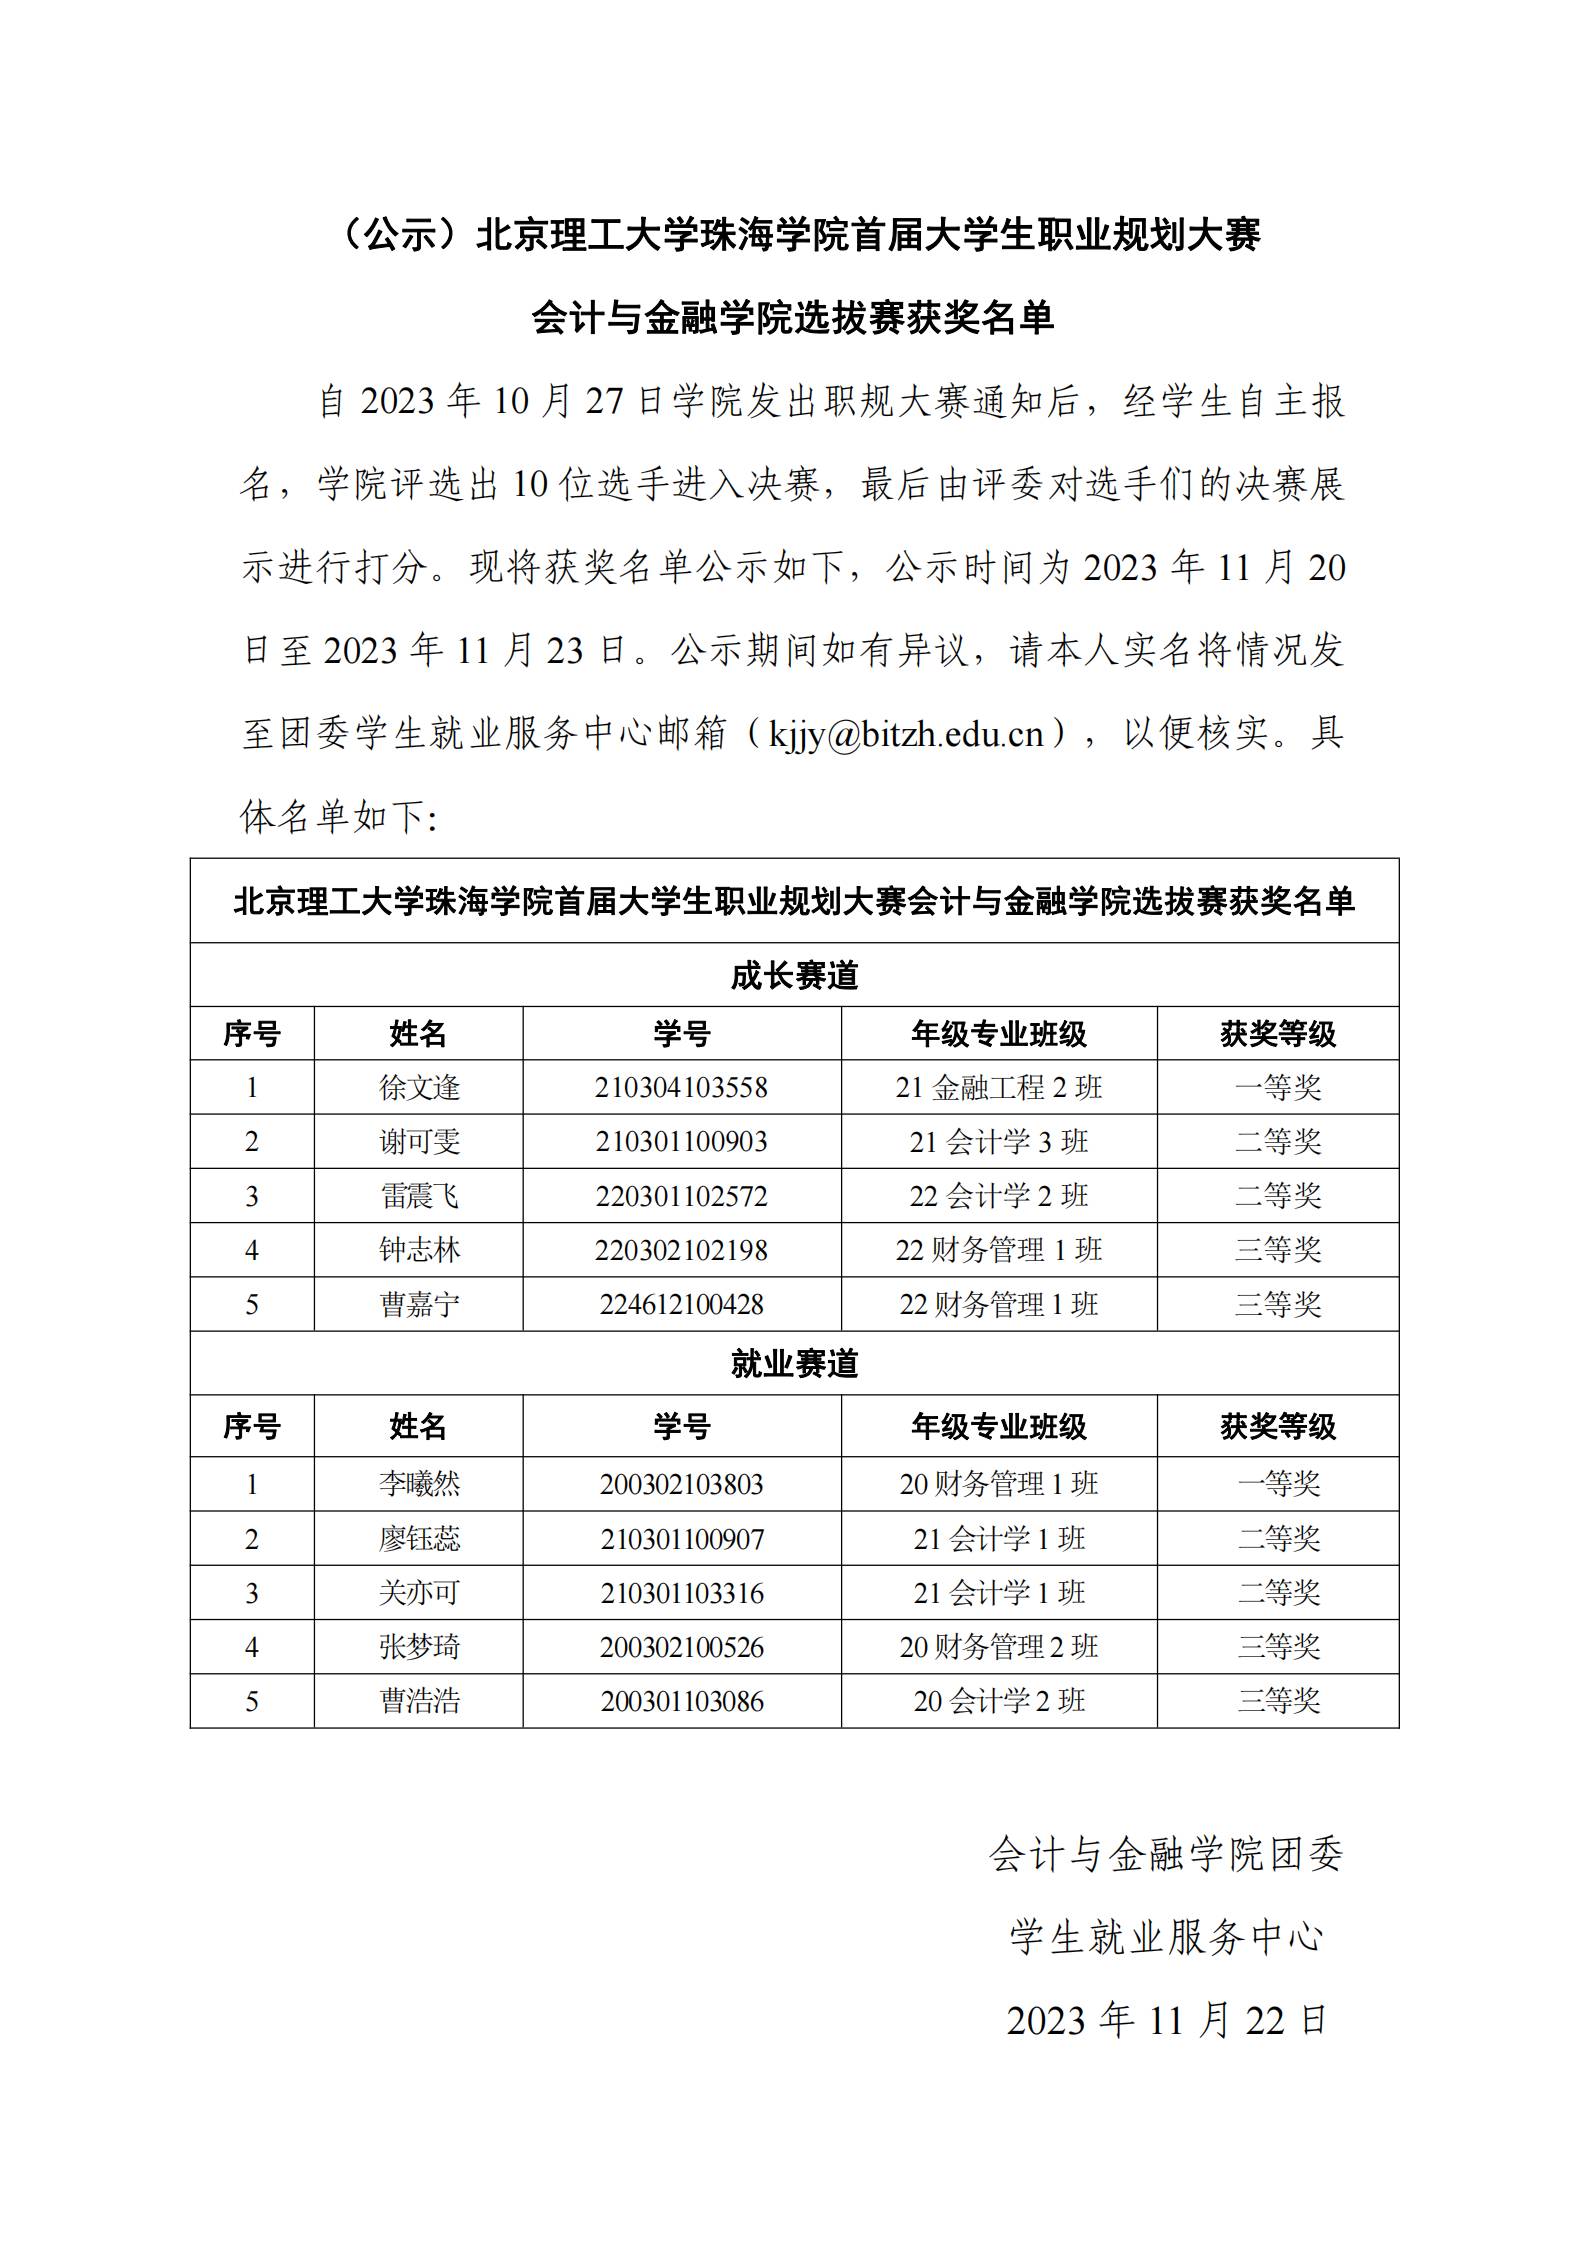 （公示）北京理工大学珠海学院首届大学生职业规划大赛会计与金融学院选拔赛获奖名单_00(1).jpg